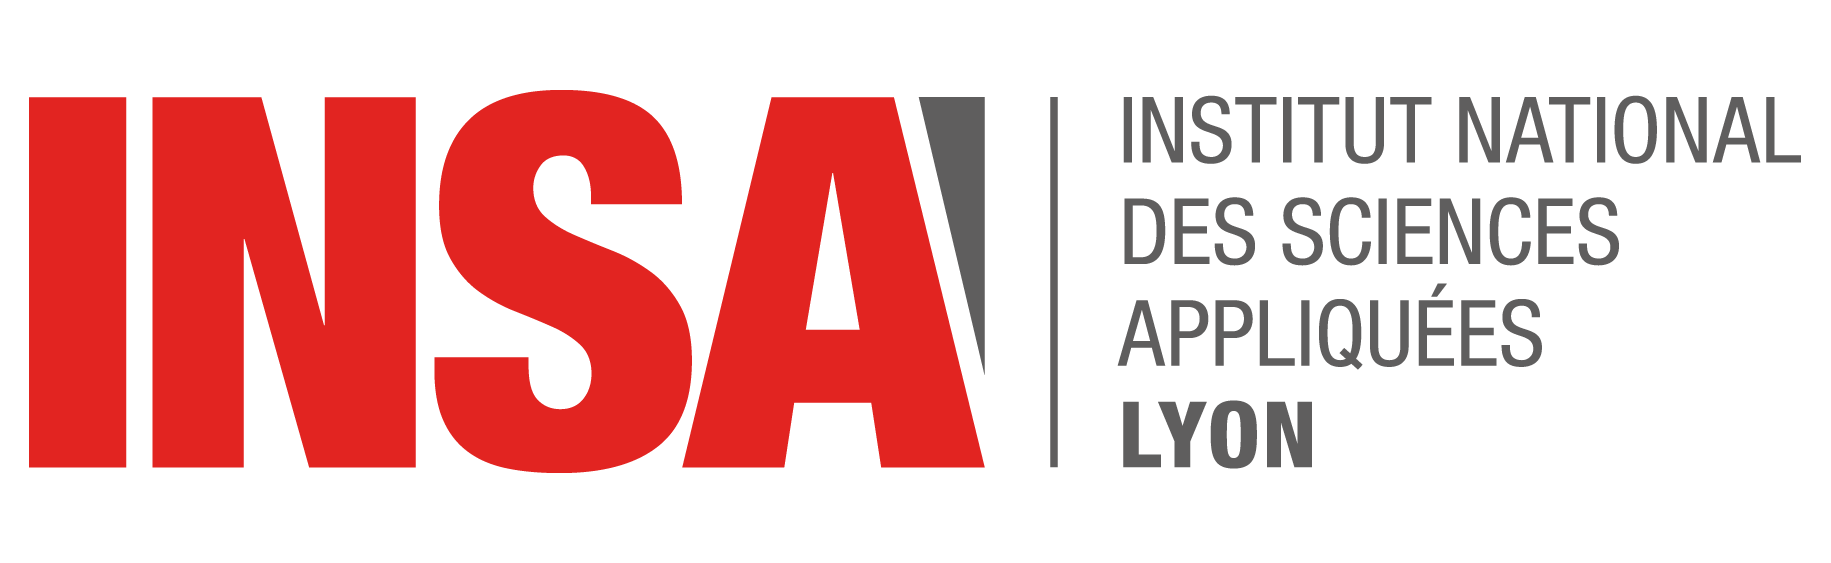 INSA Lyon logo